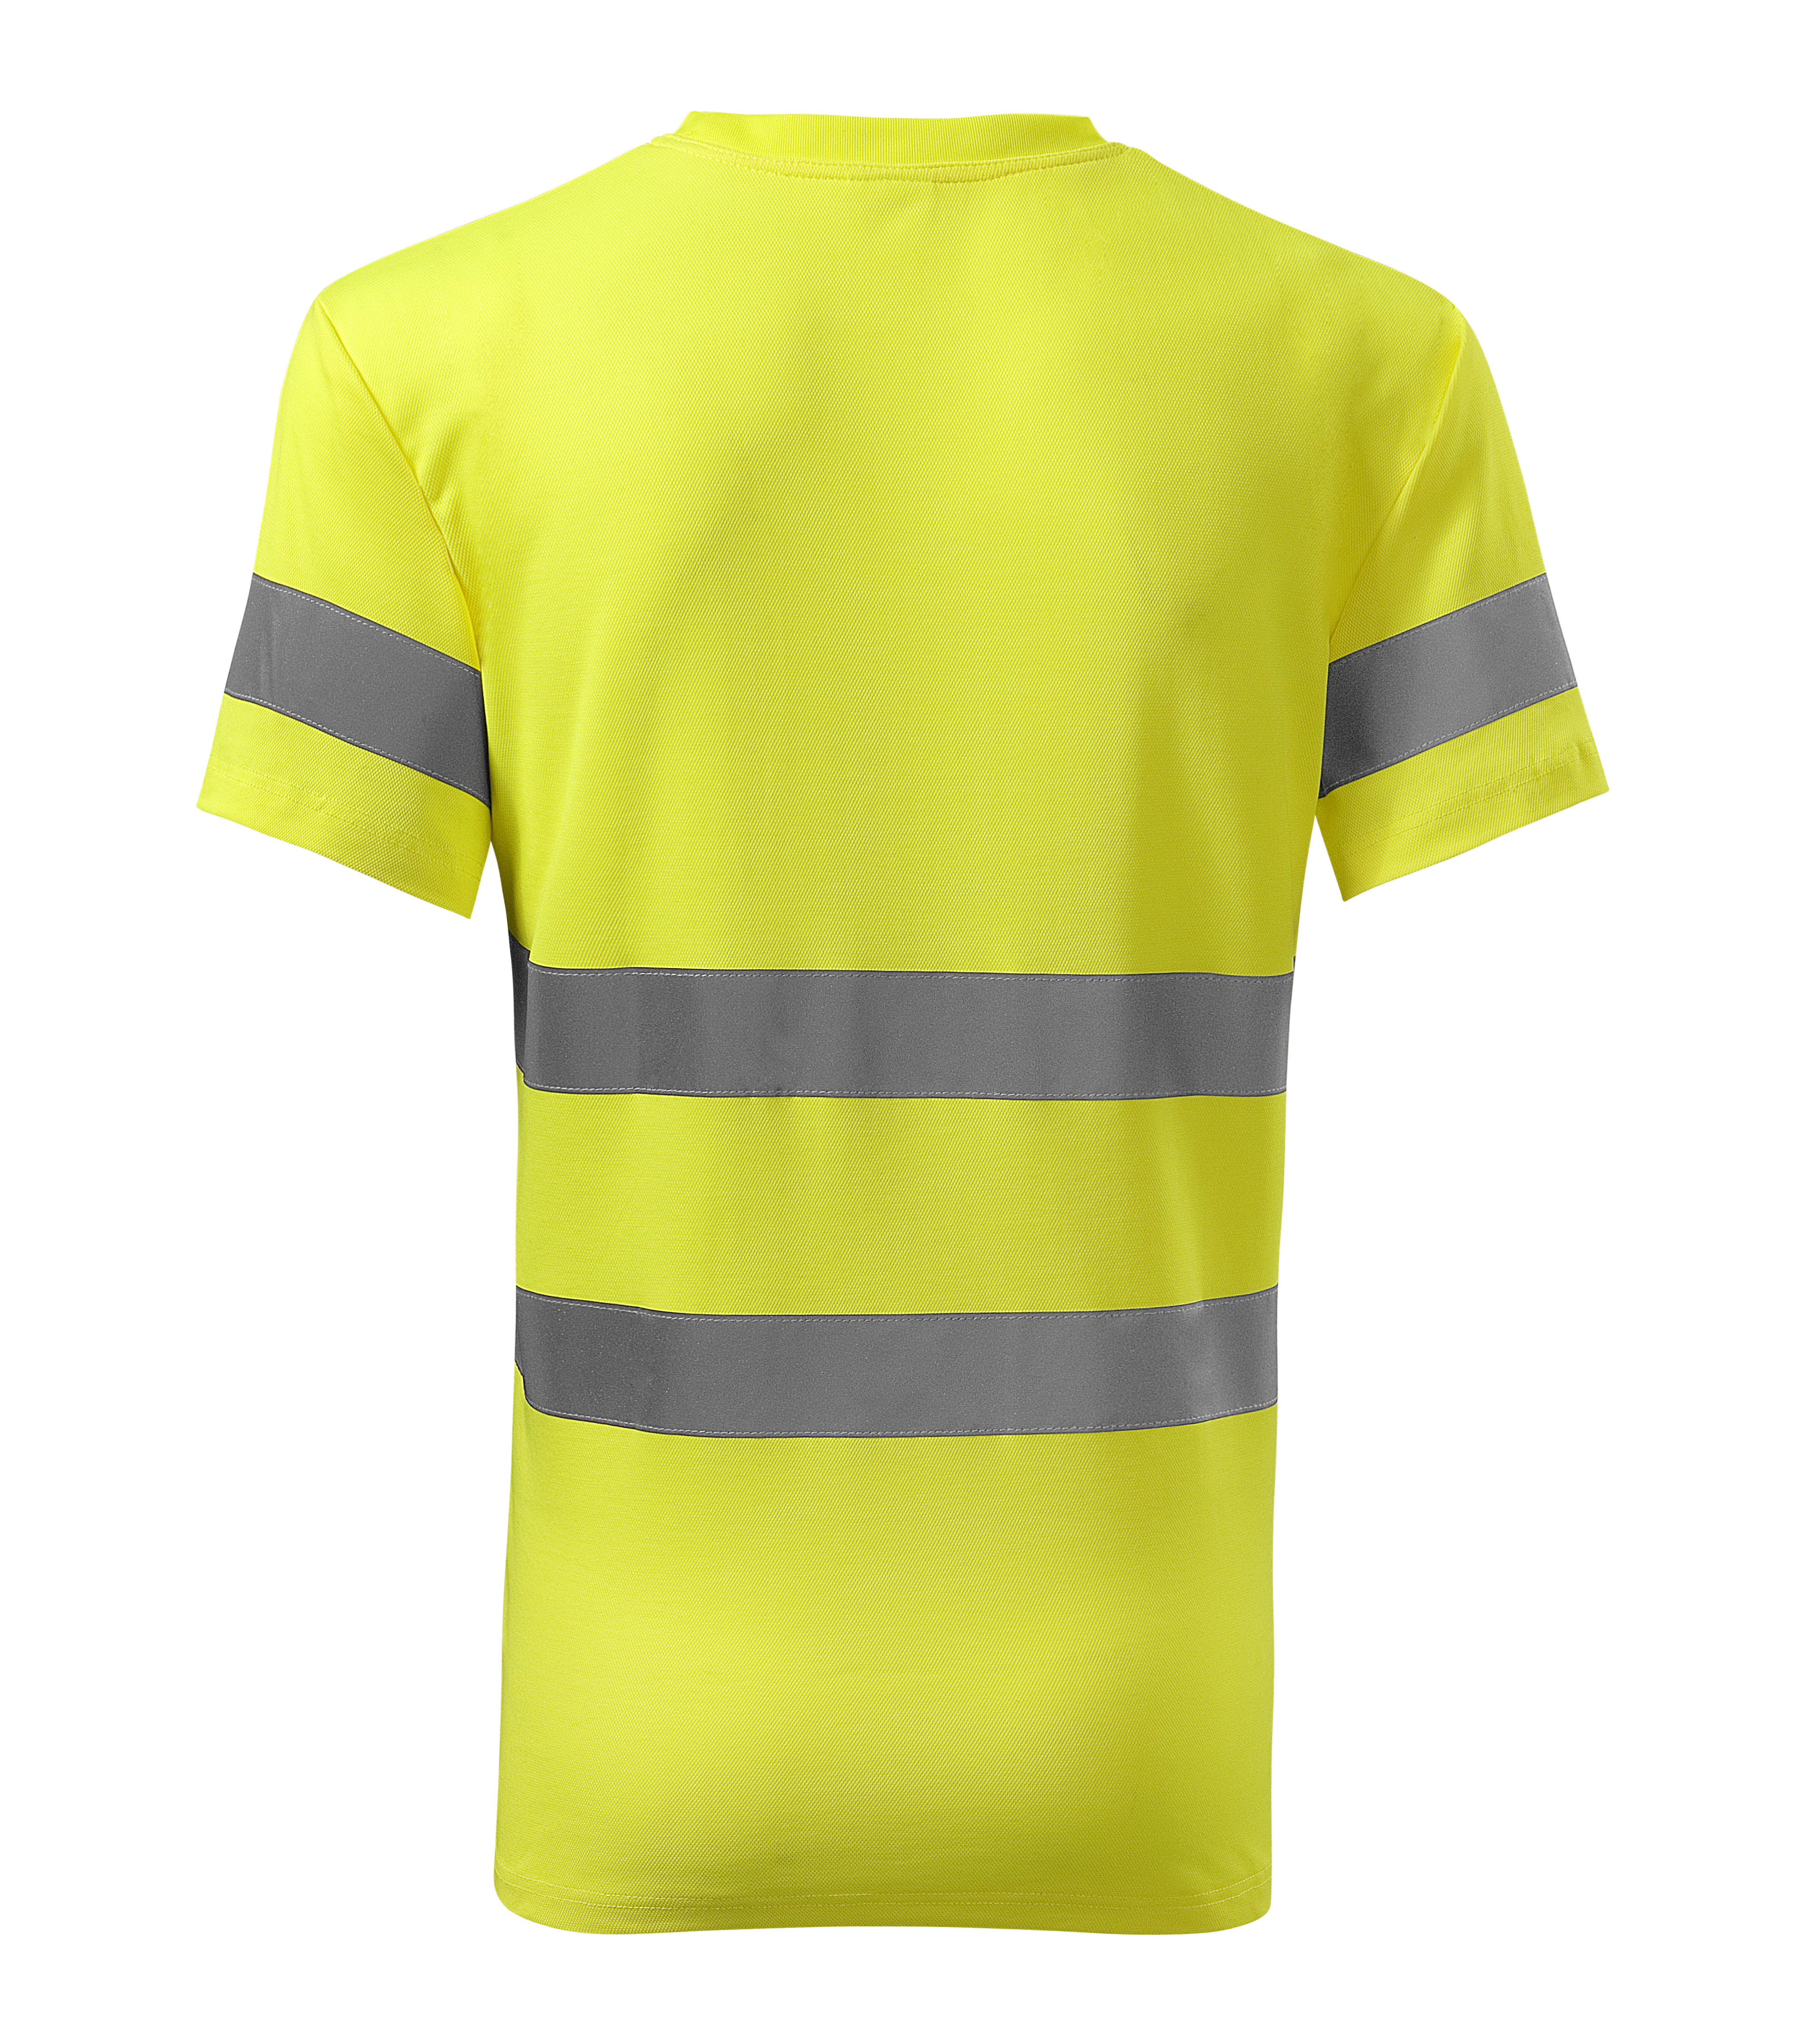 Żółta koszulka odblaskowa Protect - tył